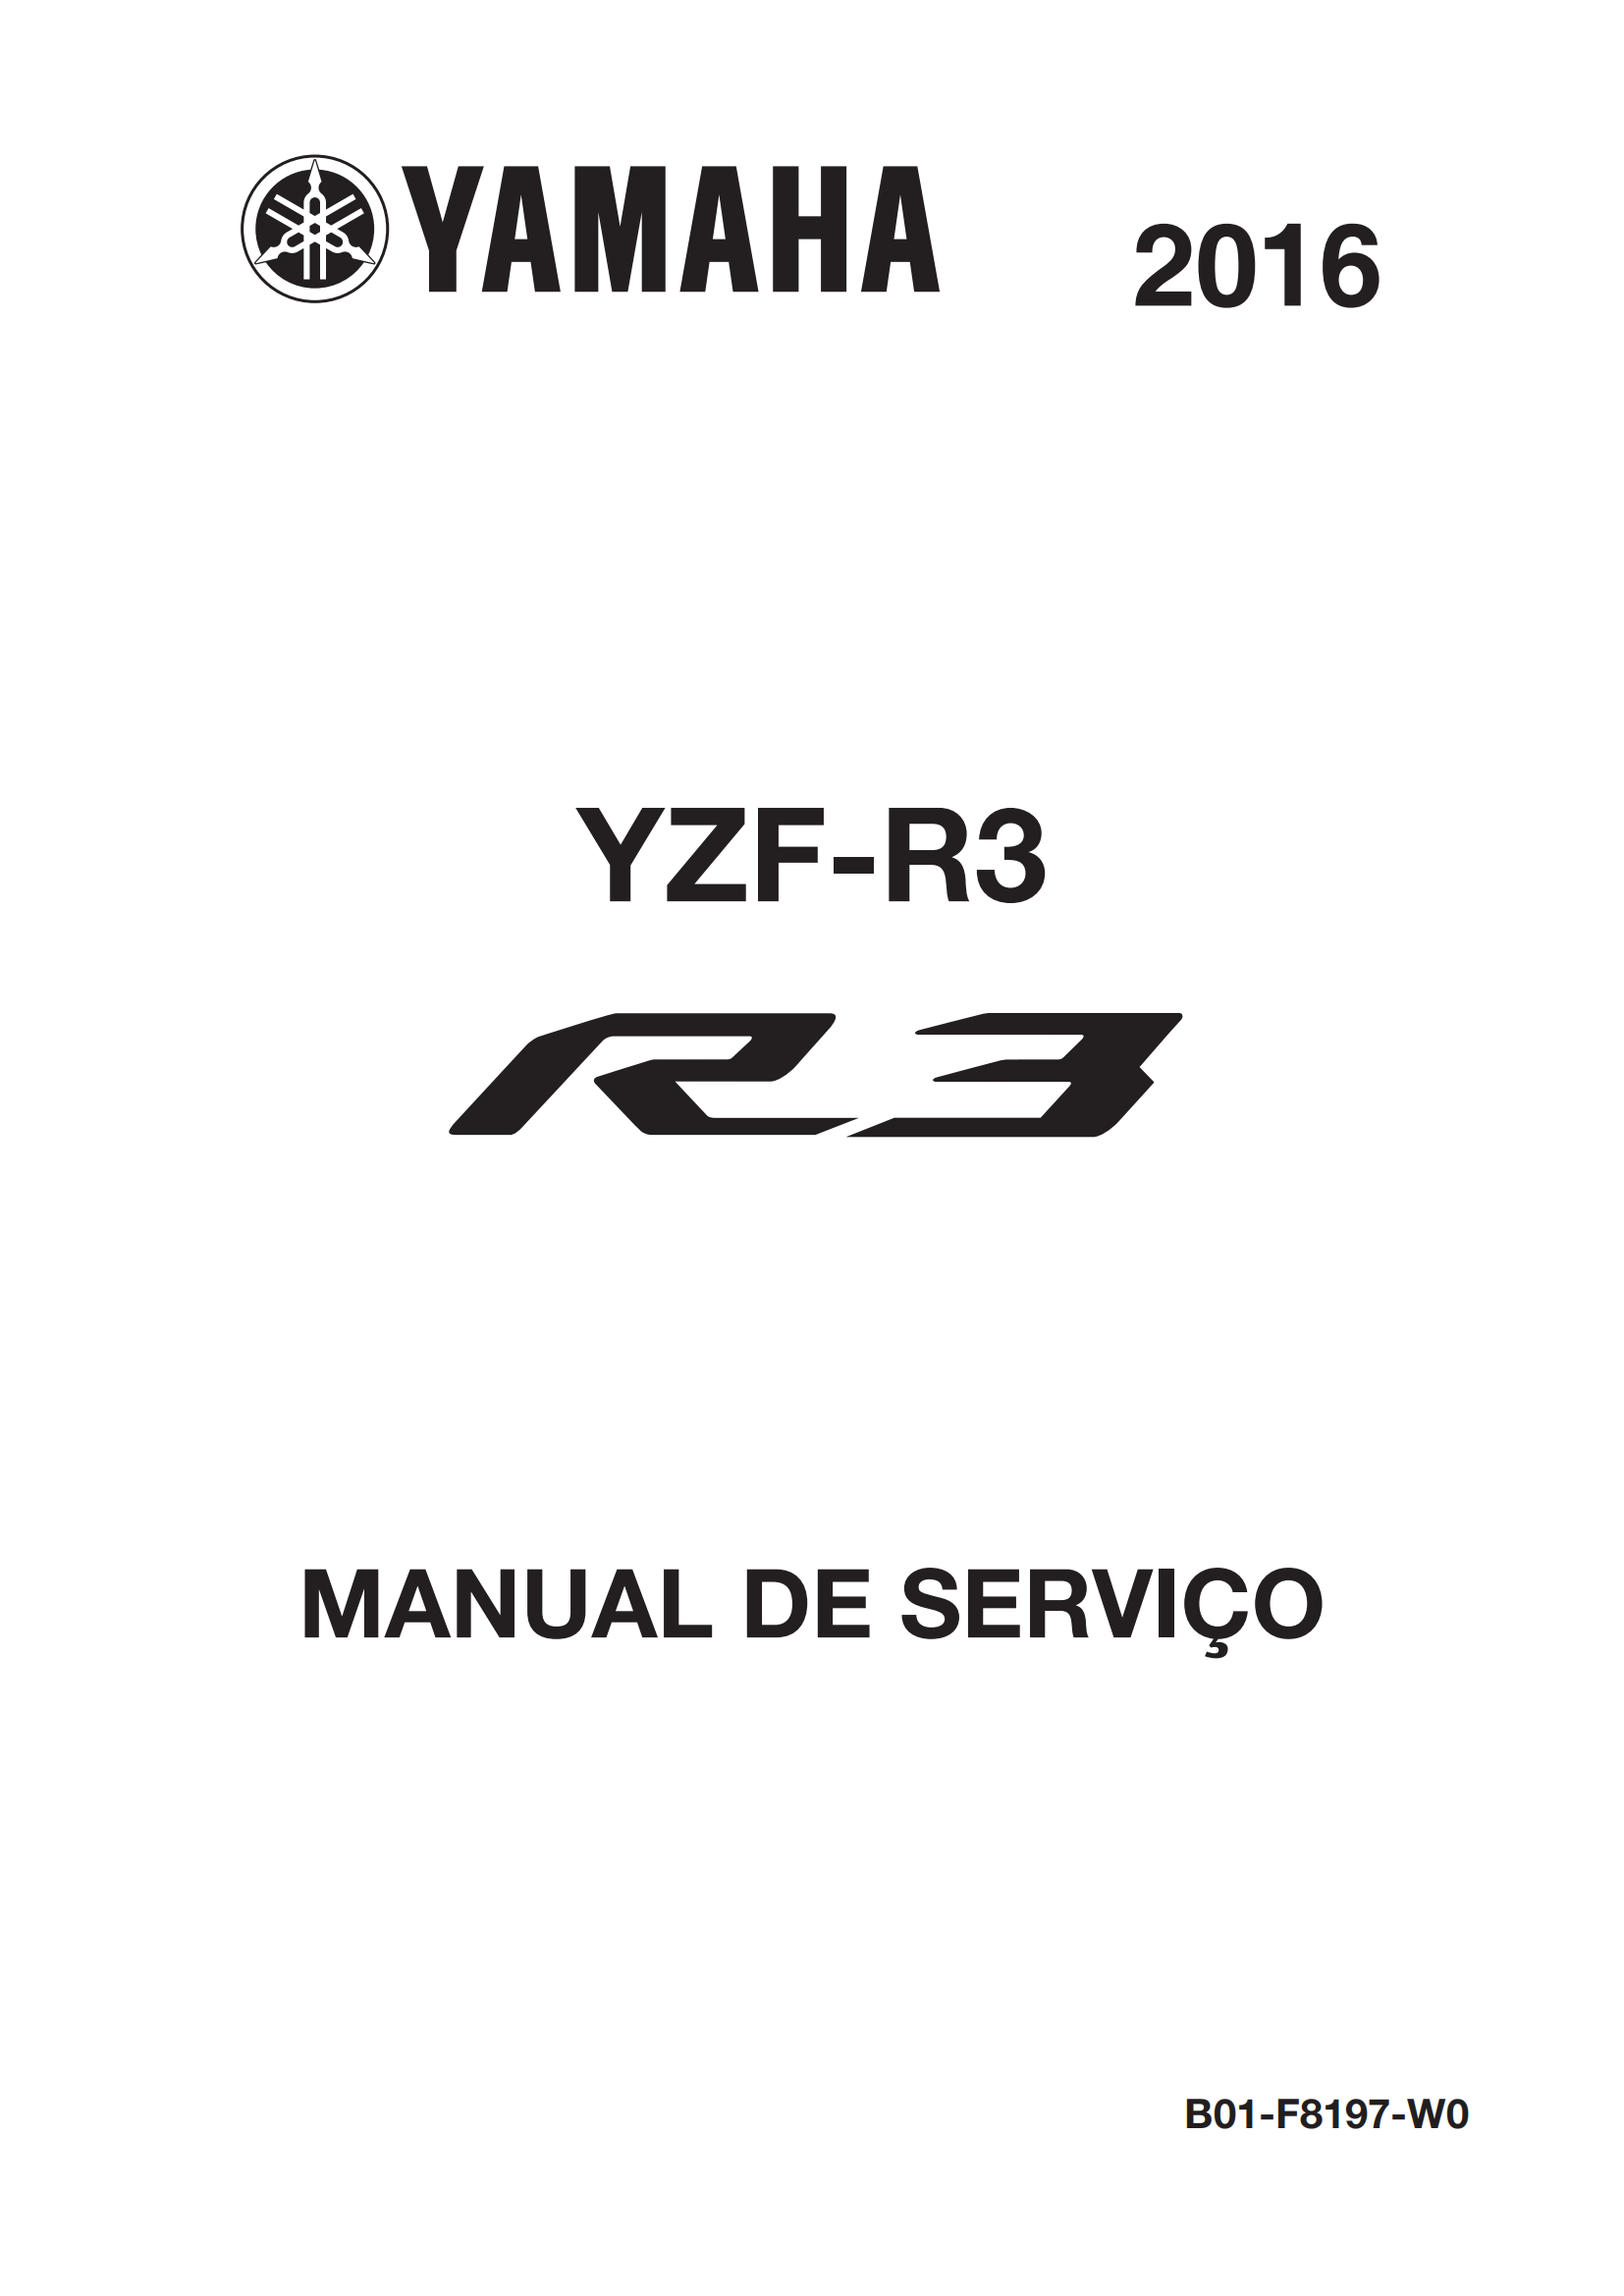 原版葡萄牙语2016-2017年雅马哈r3维修手册雅马哈yzfr3 yamaha yzf-r3维修手册插图